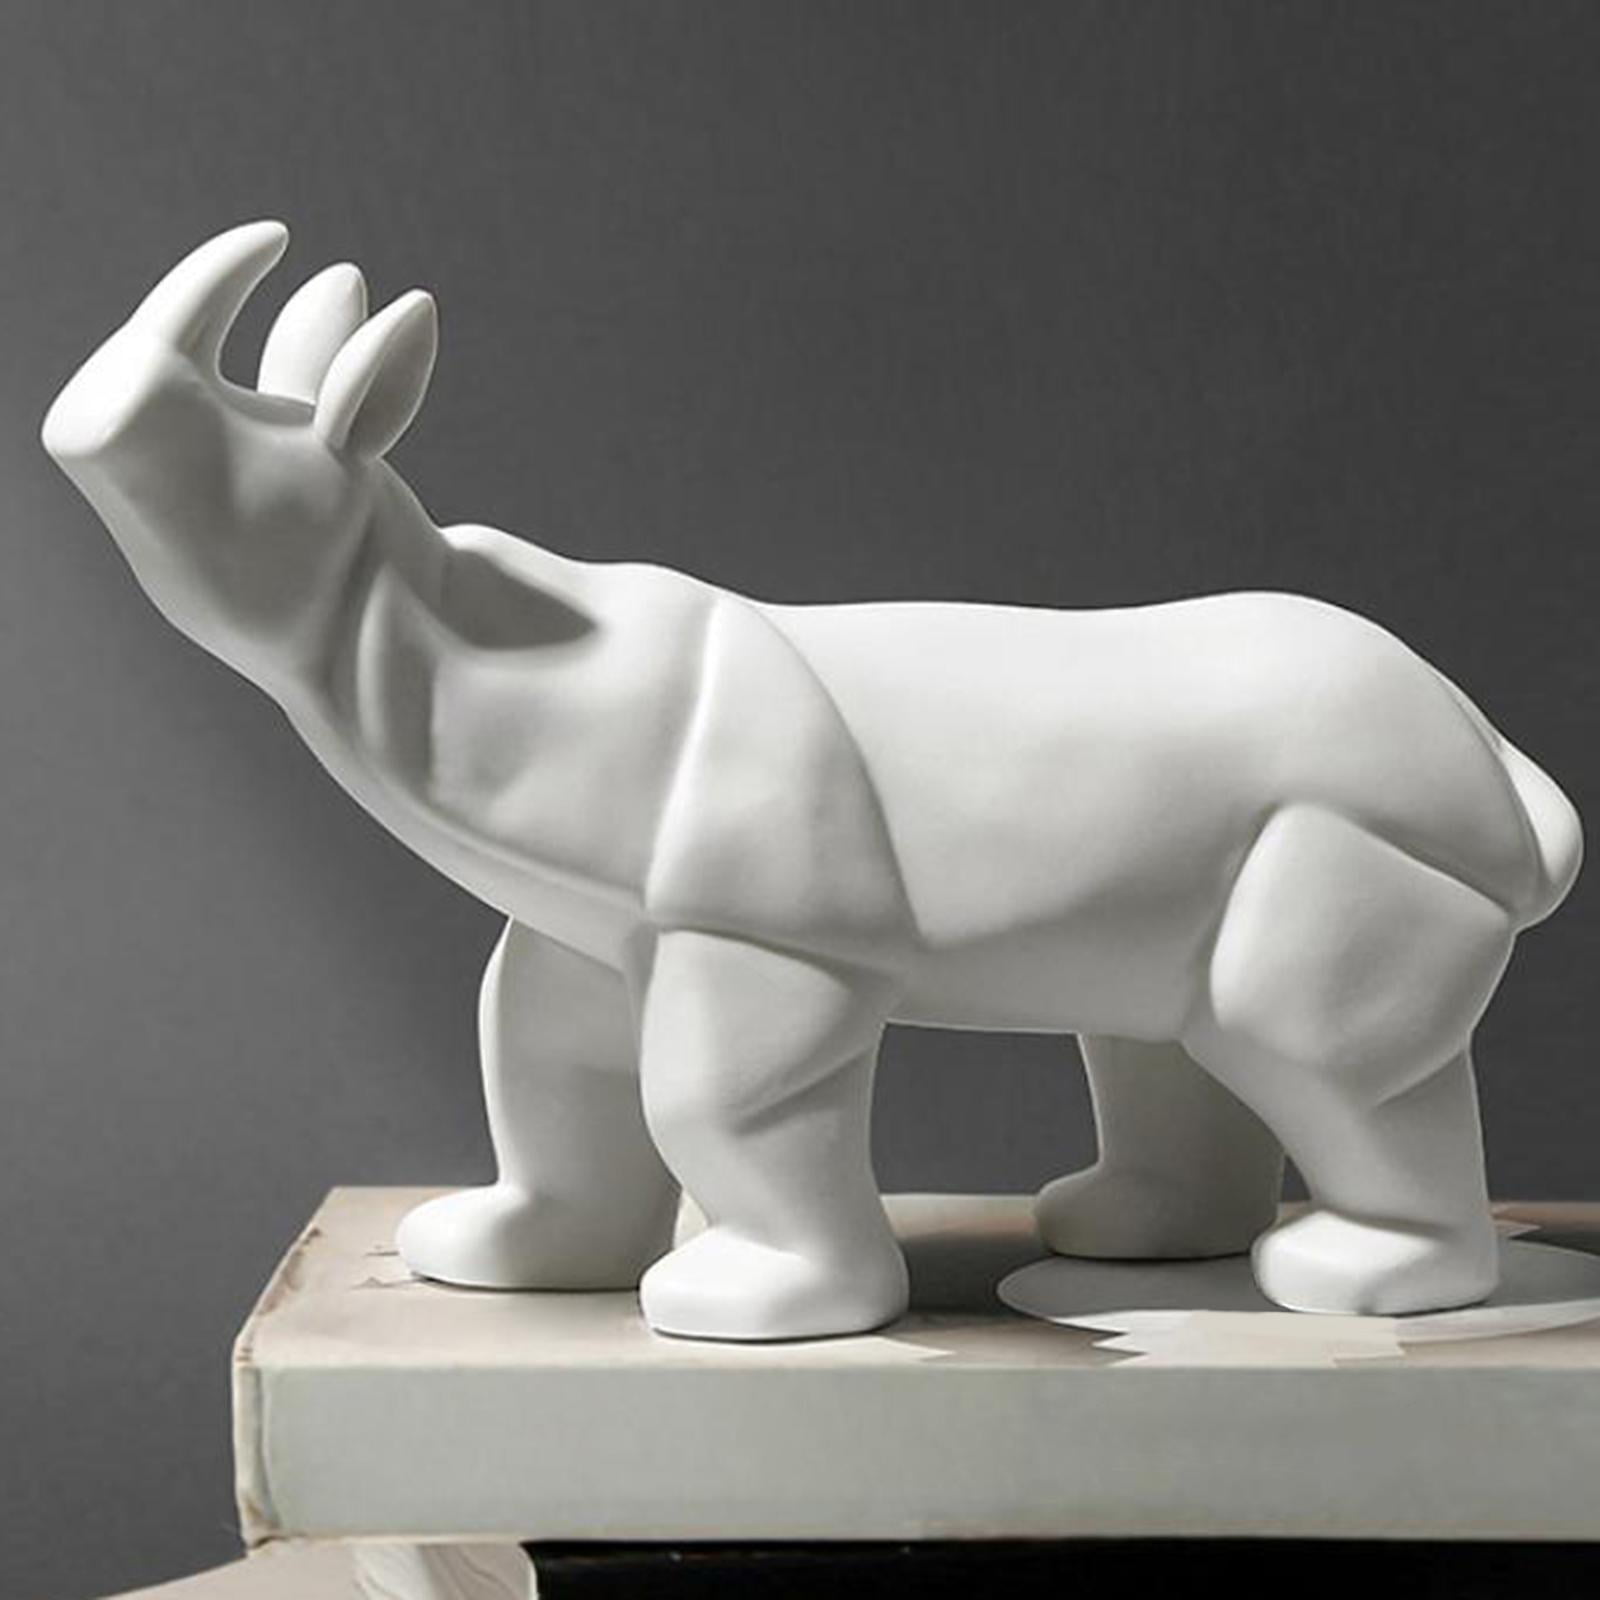 CFX020 2 Armadillo Ceramic Figurine Animal Statue 